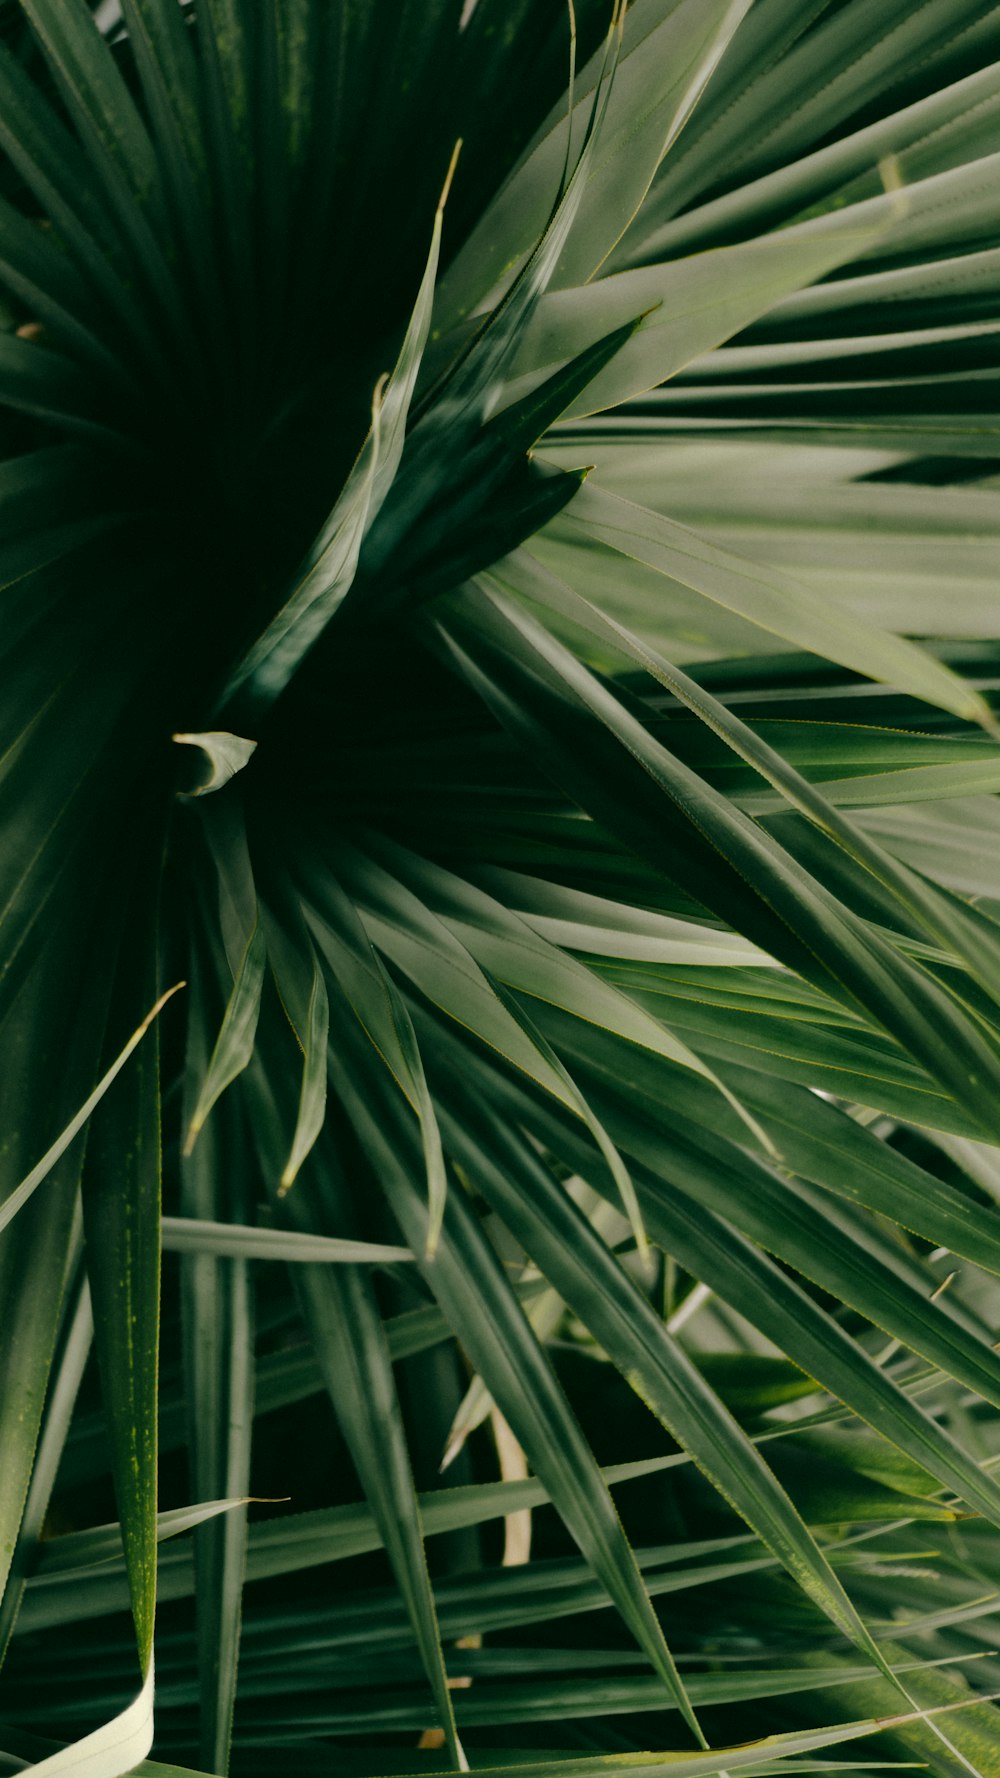 fotografia em close-up da planta da palmeira verde